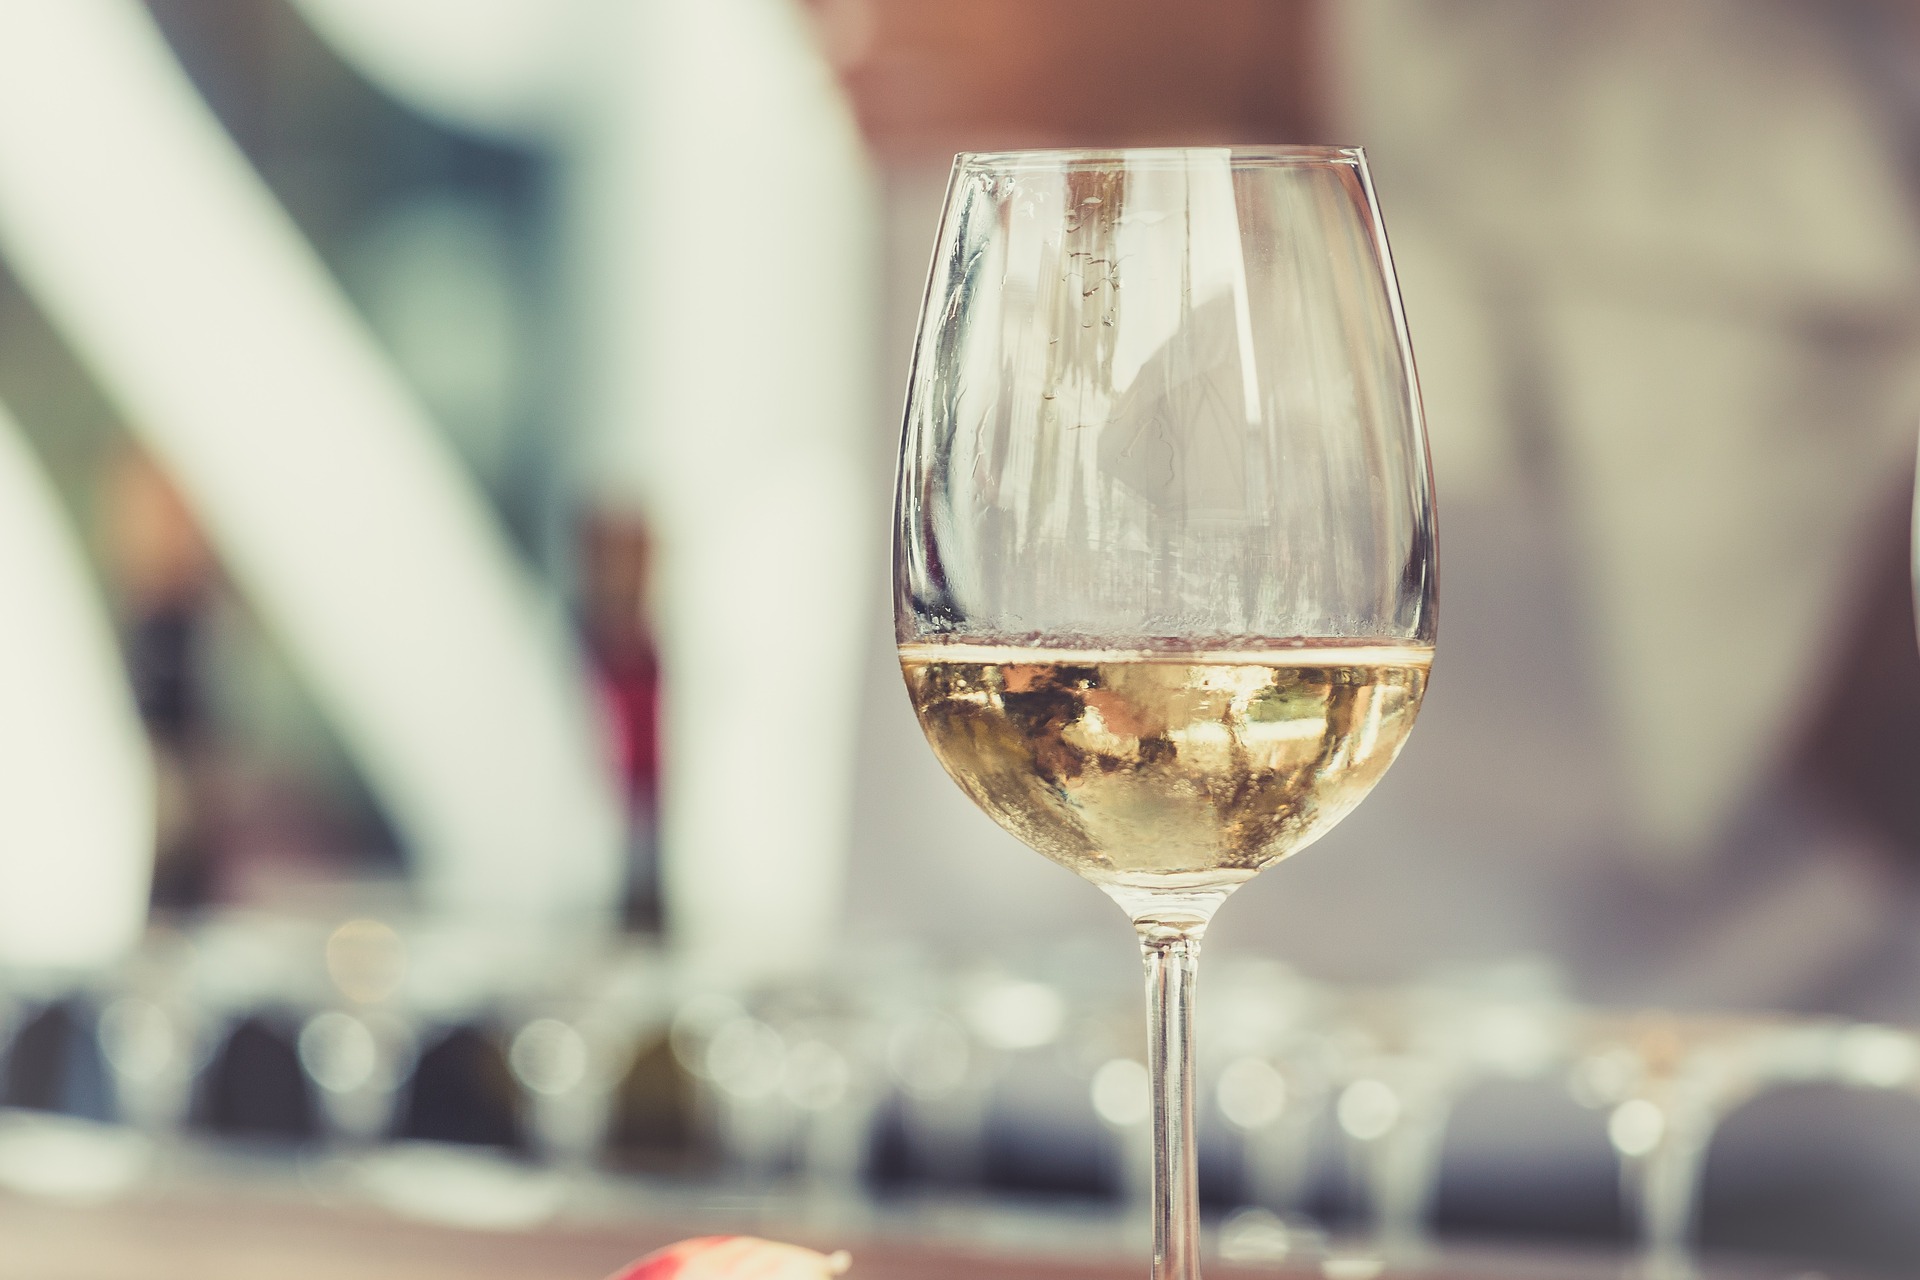 A glass of Sancerre Blanc on a bar.